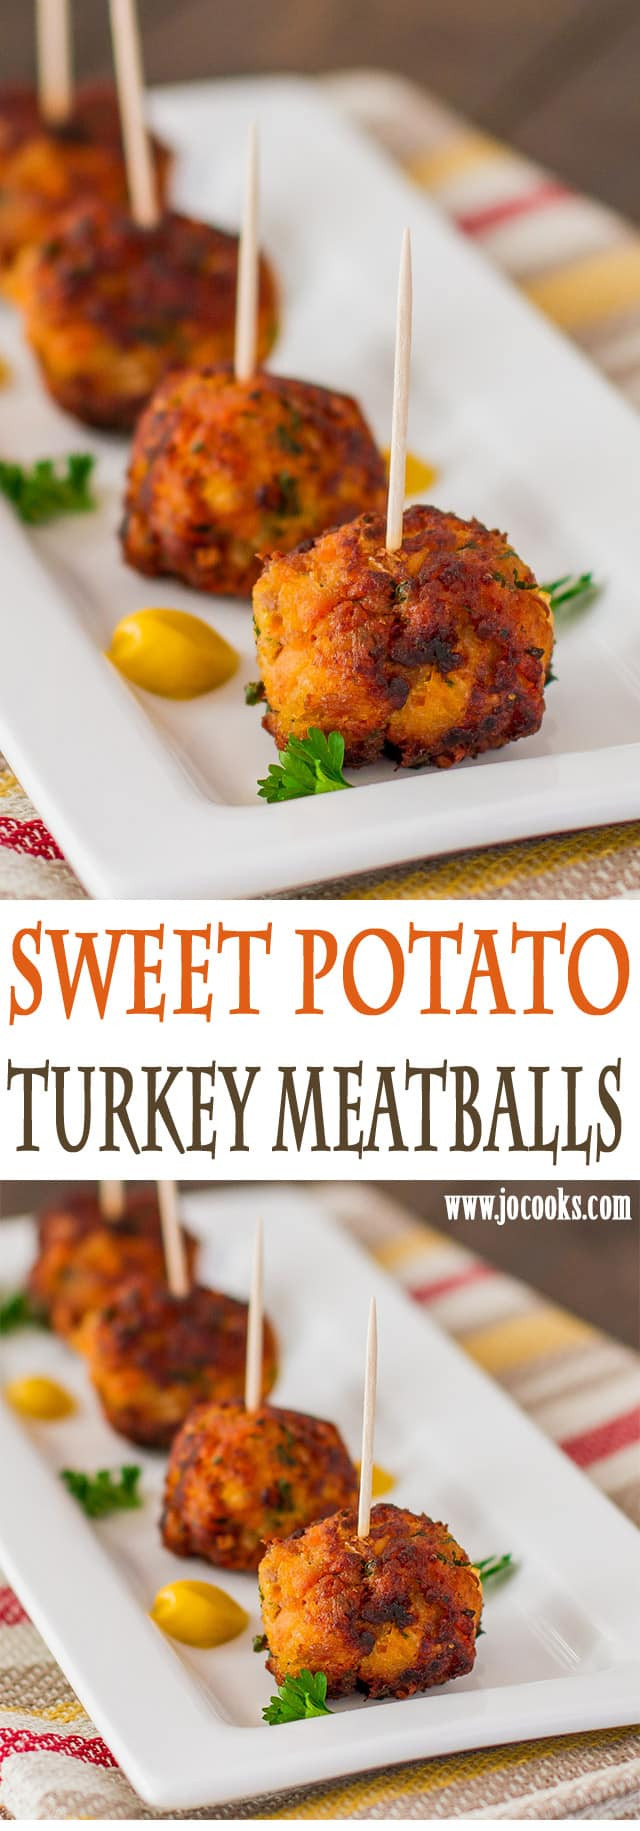 Turkey Meatballs Appetizers
 Sweet Potato Turkey Meatballs Jo Cooks